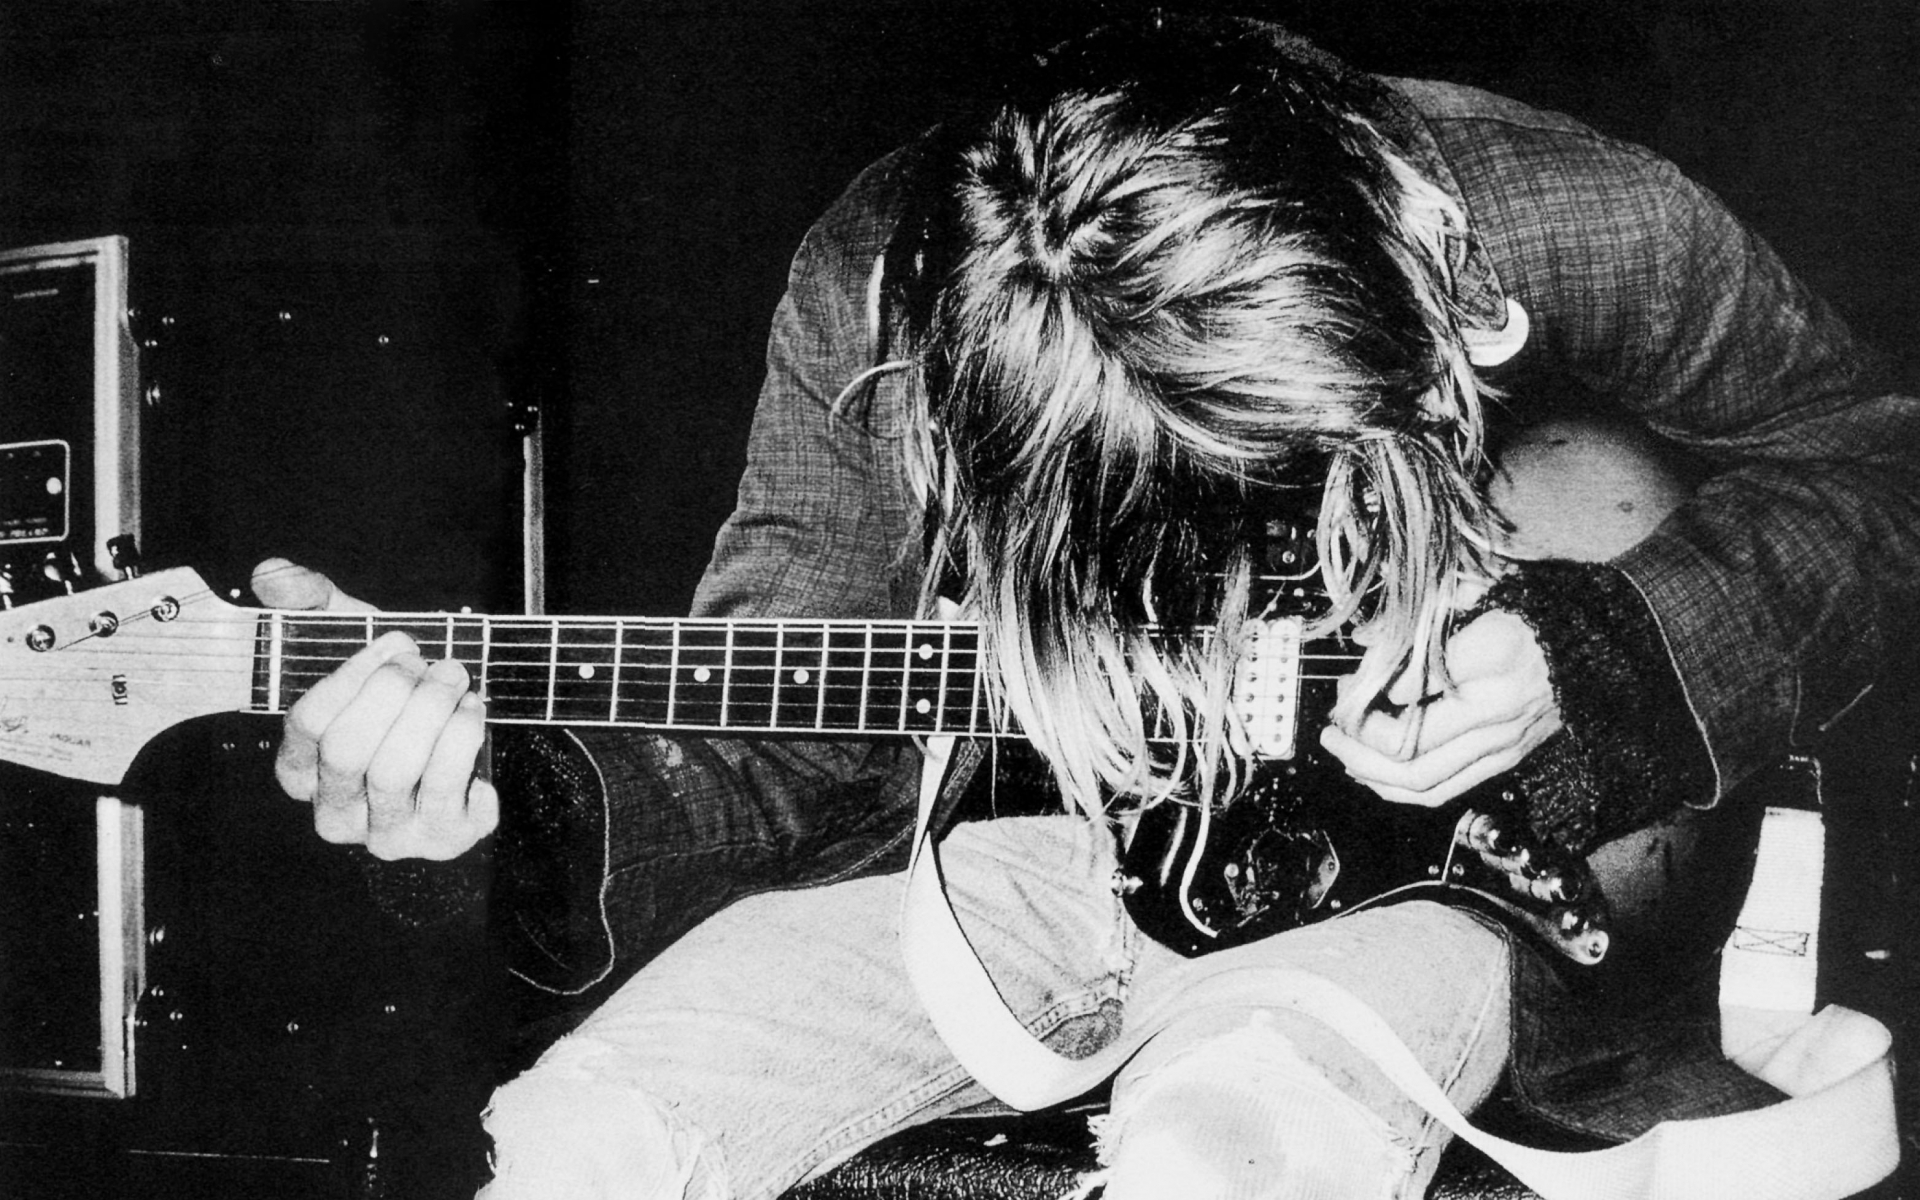 Kurt Cobain Wallpapers